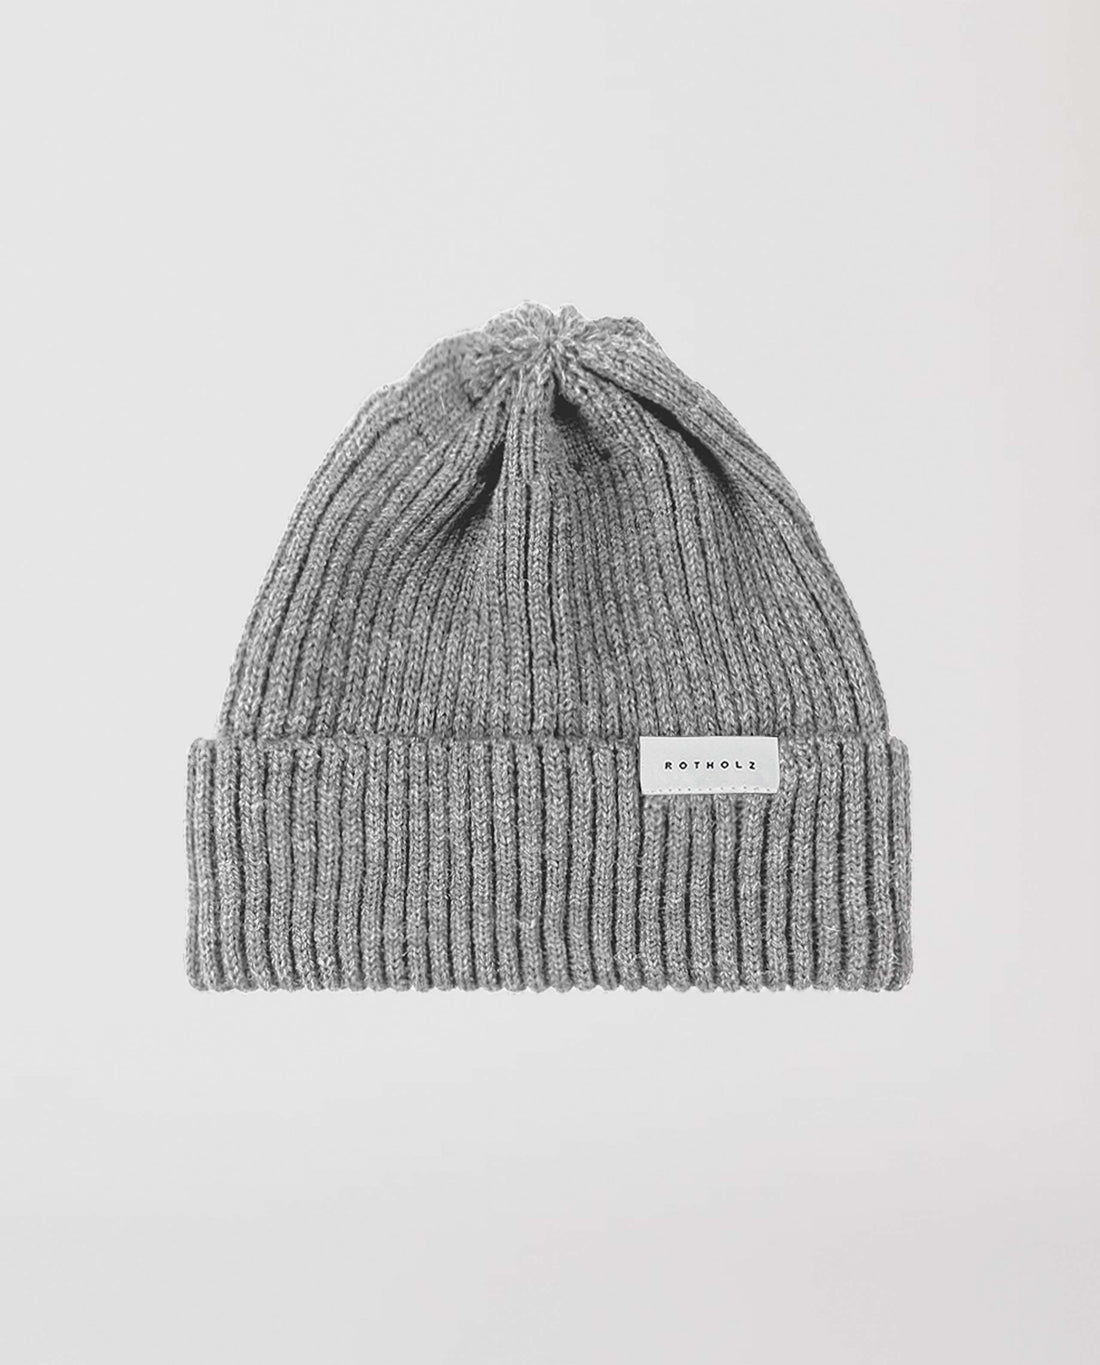 marché commun rotholz bonnet laine mérinos biologique côtelé gris